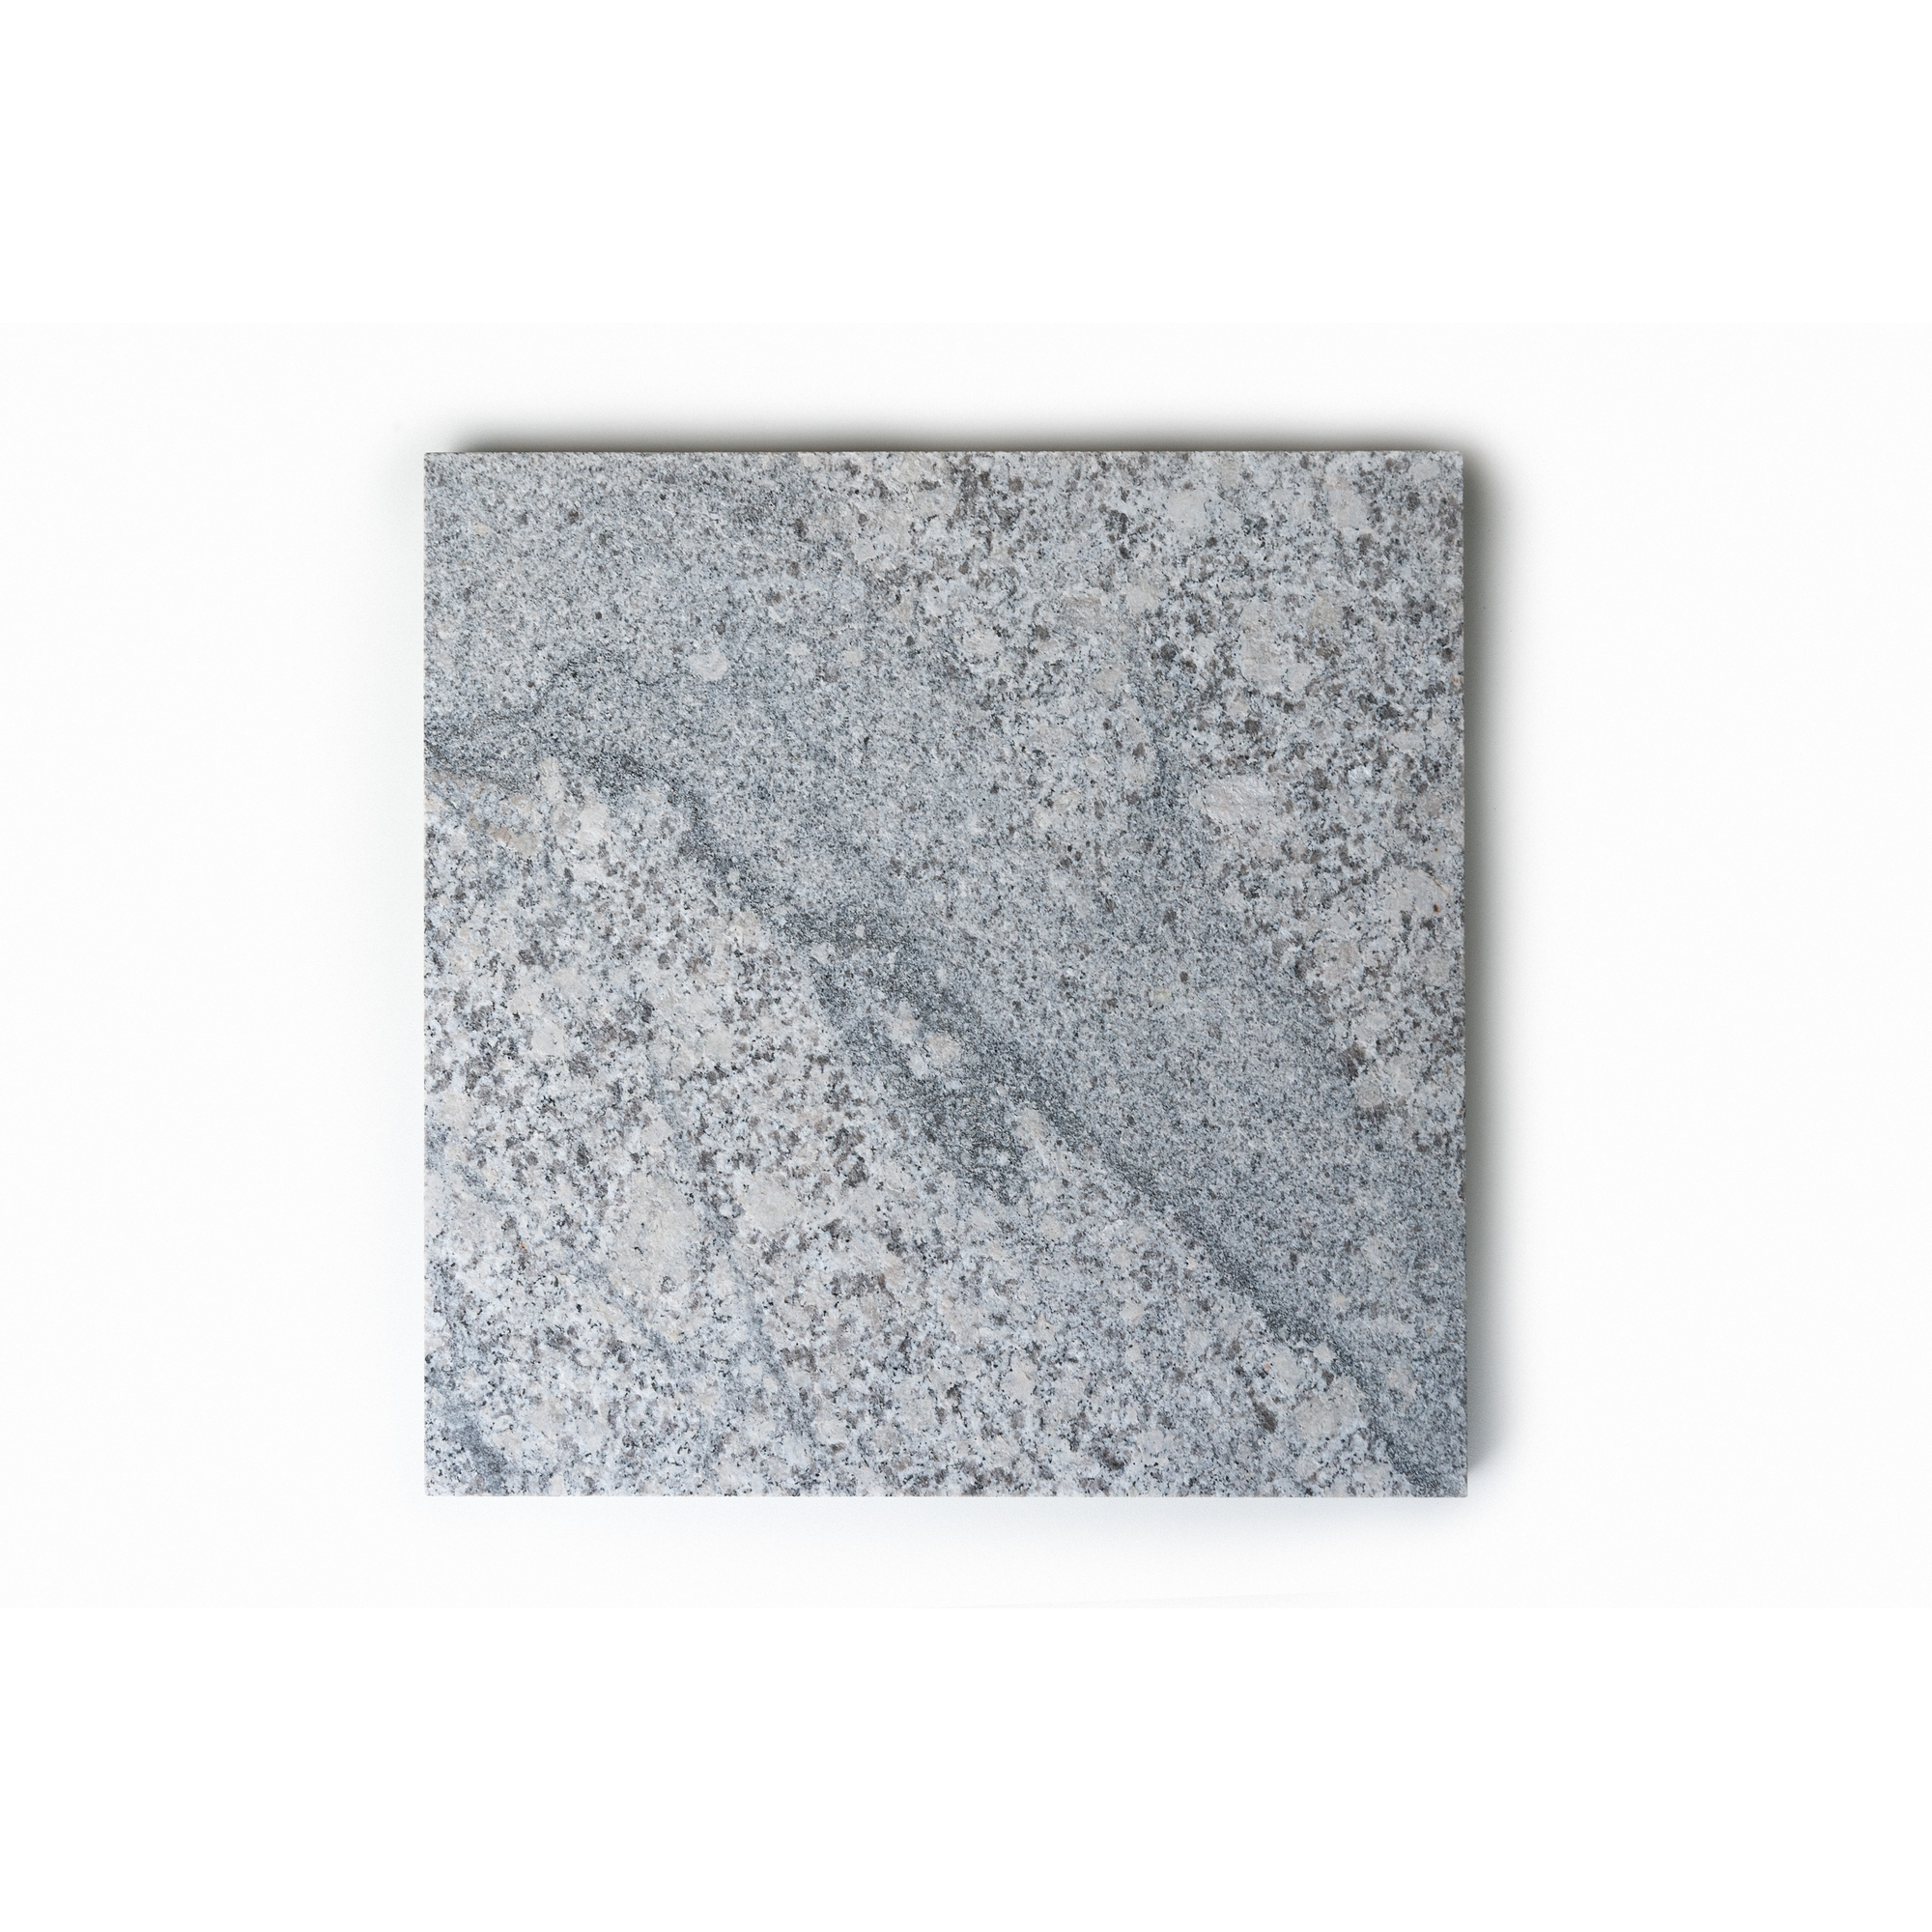 Außenfliese 'Granit' grau 30 x 30 x 2 cm + product picture